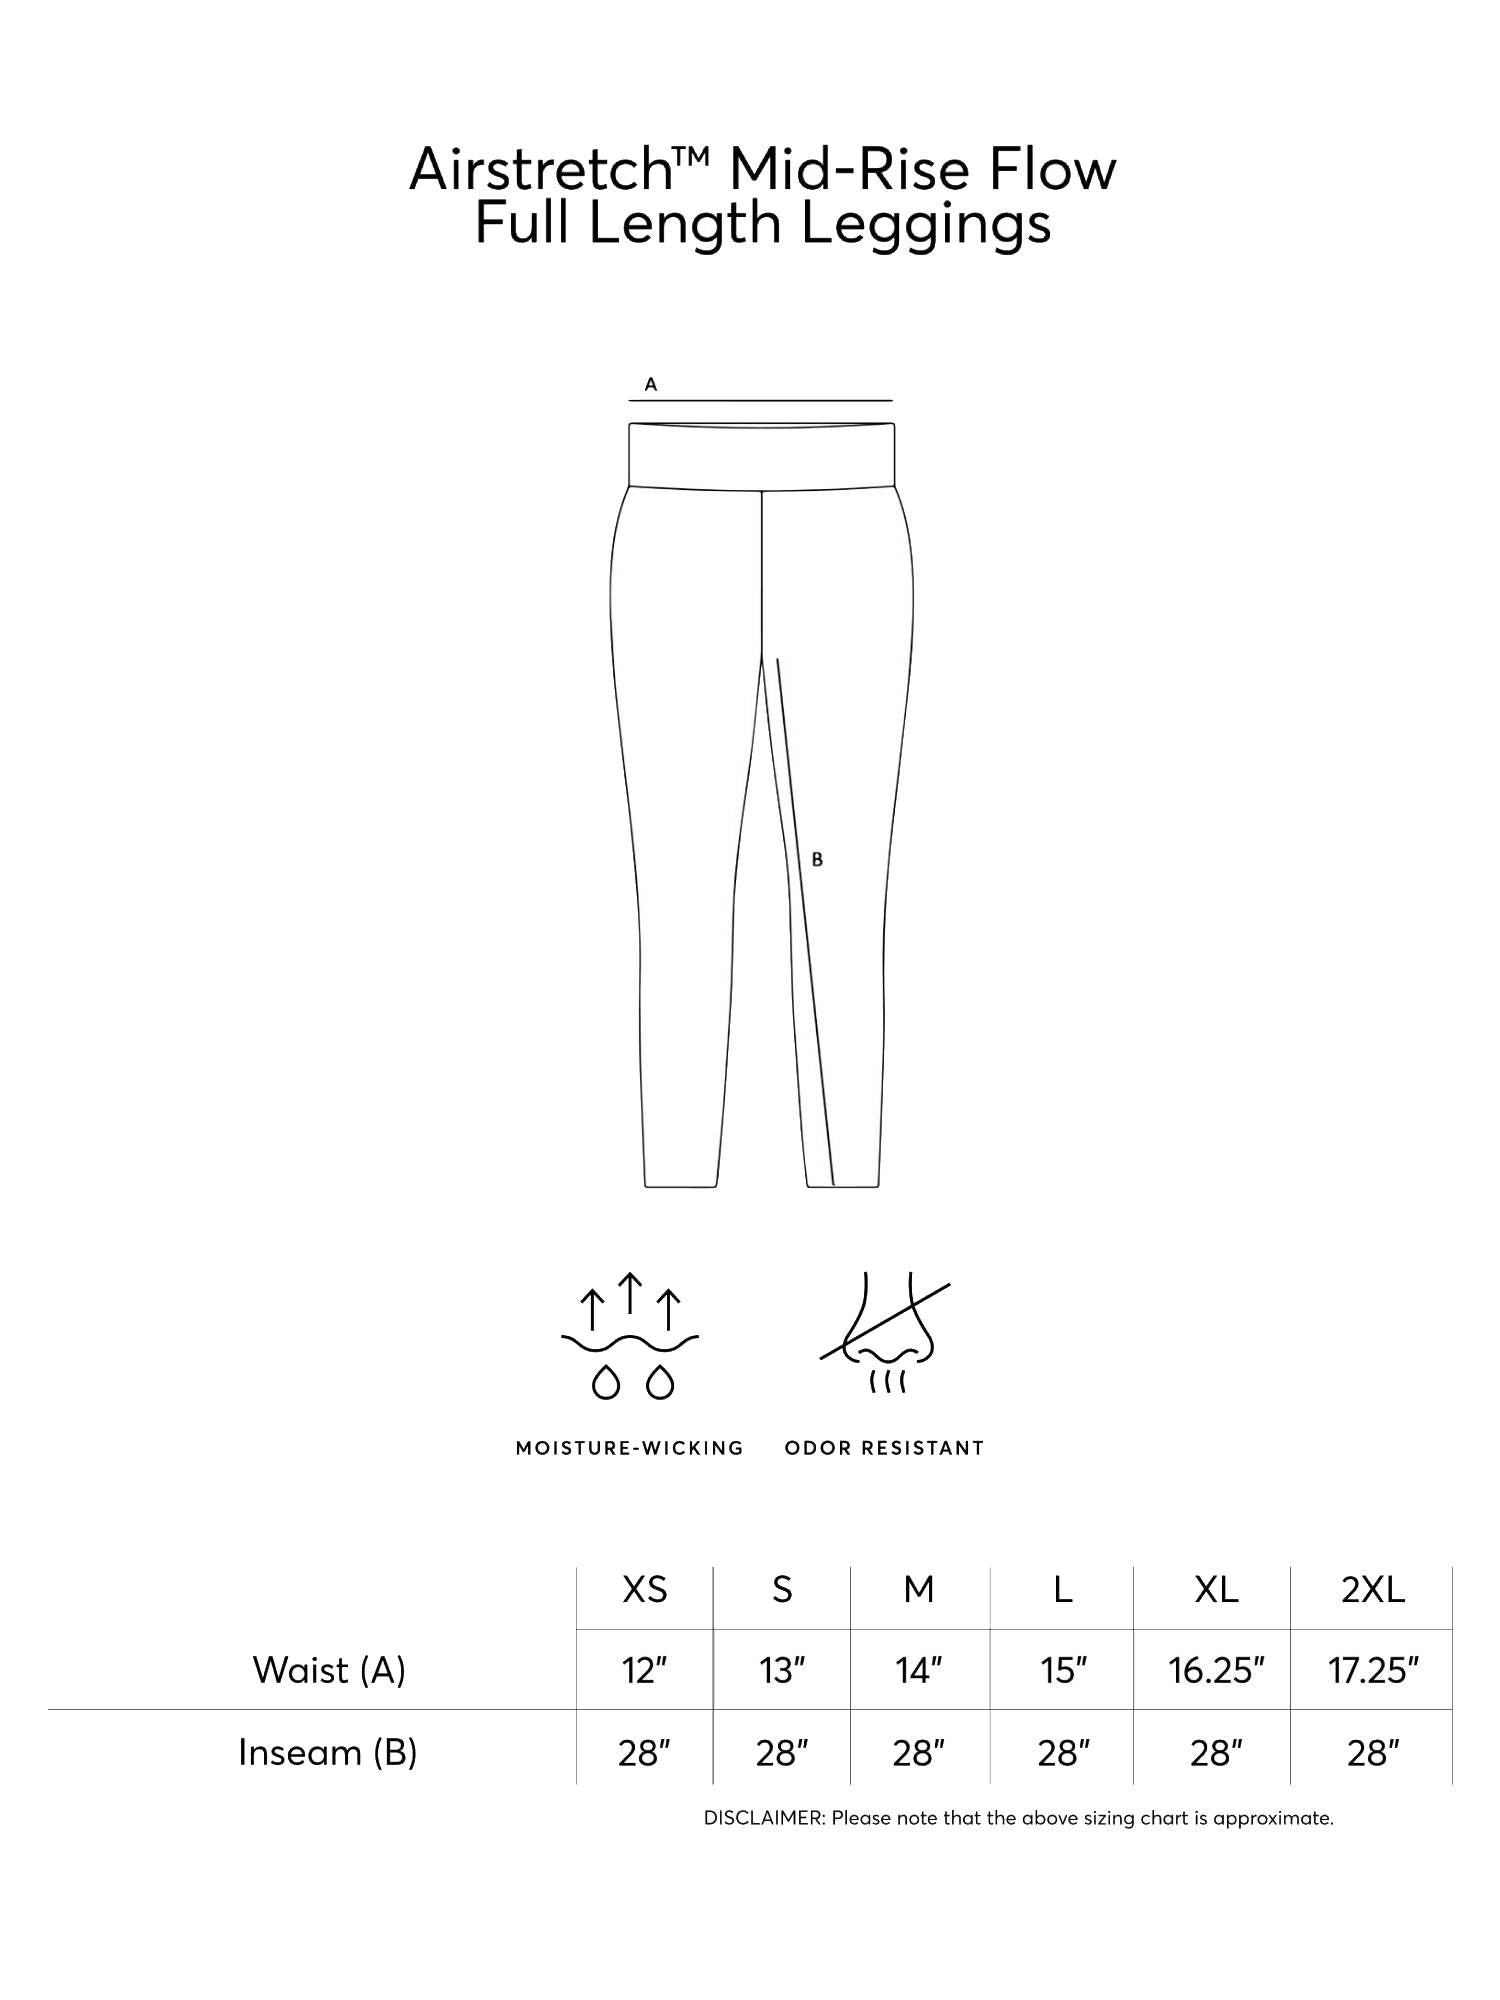 Expert Brand Women's Airstretch Mid-Rise Flow Full Length Leggings with Pocket - DressbarnLeggings